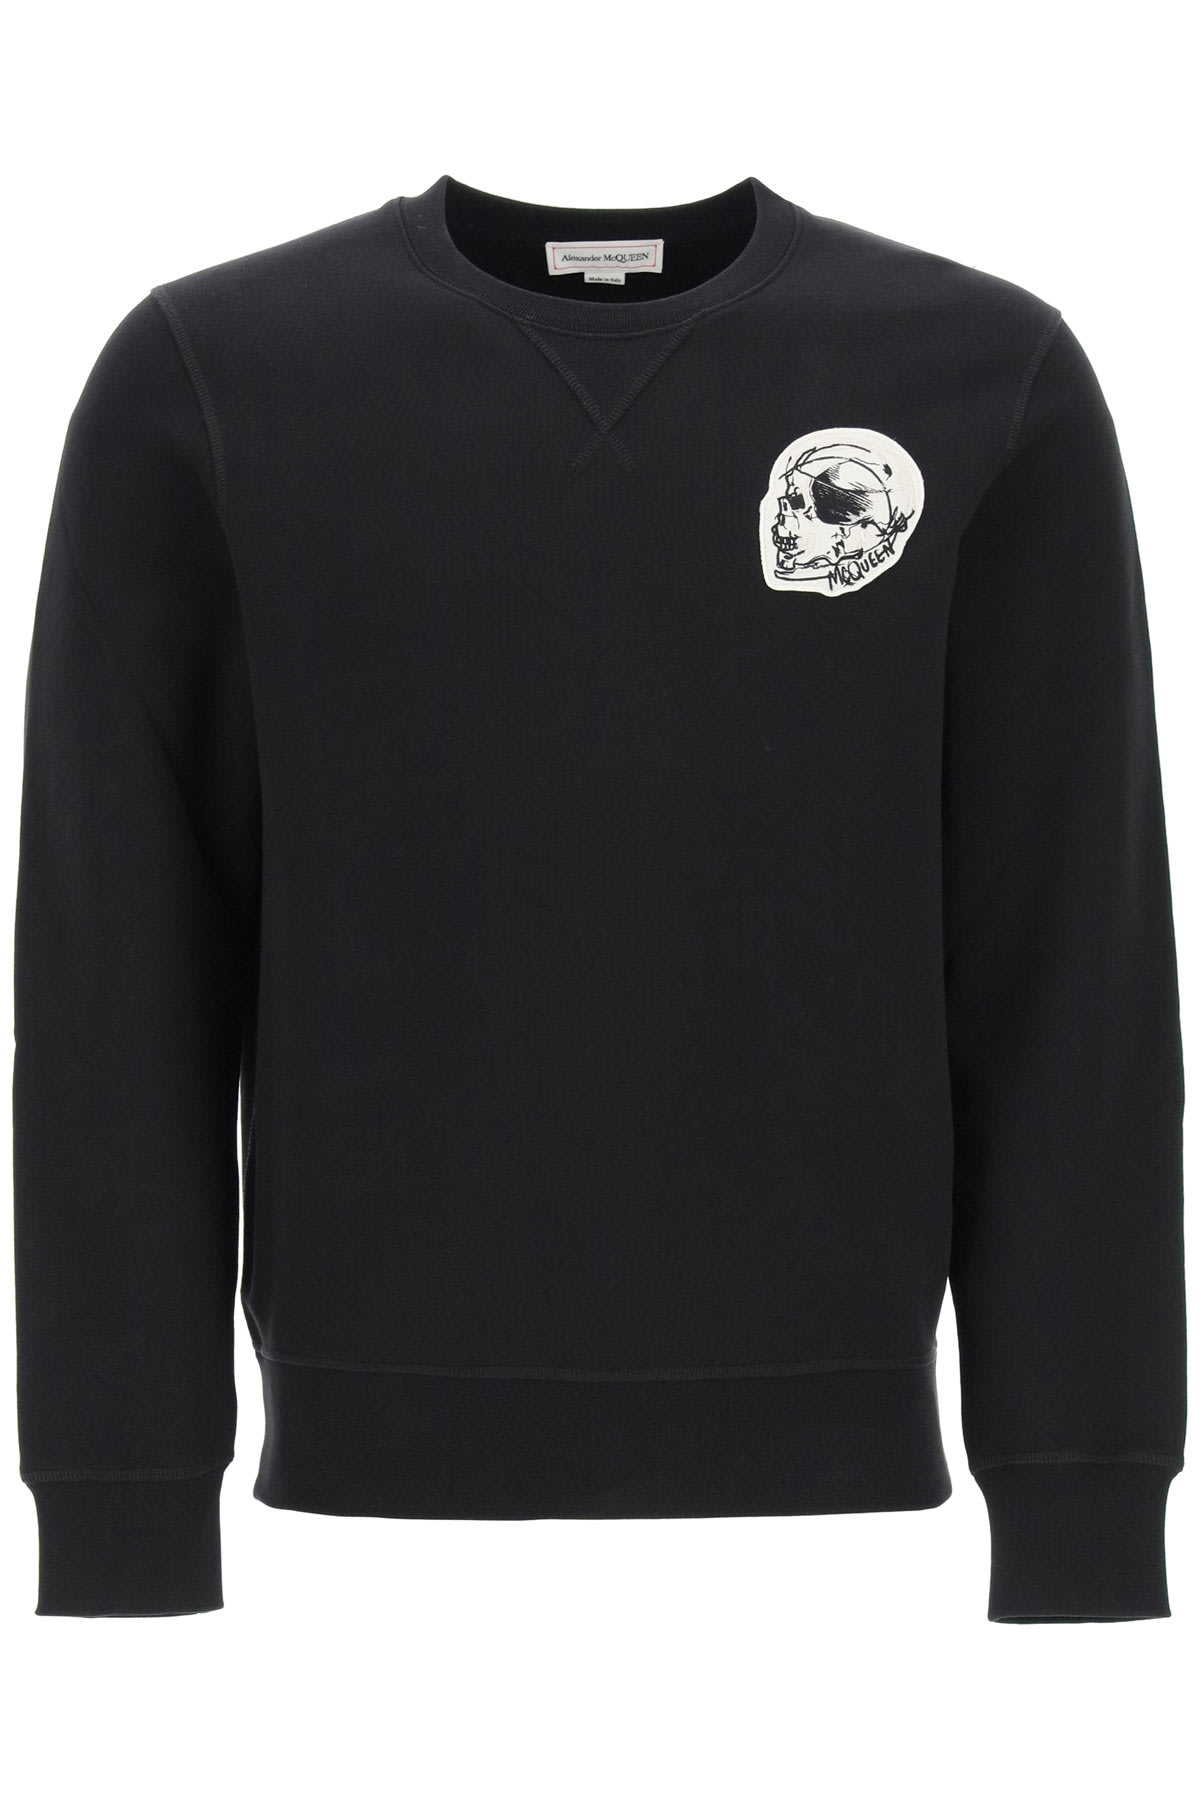 Alexander McQueen Sweatshirt With Skull Patch